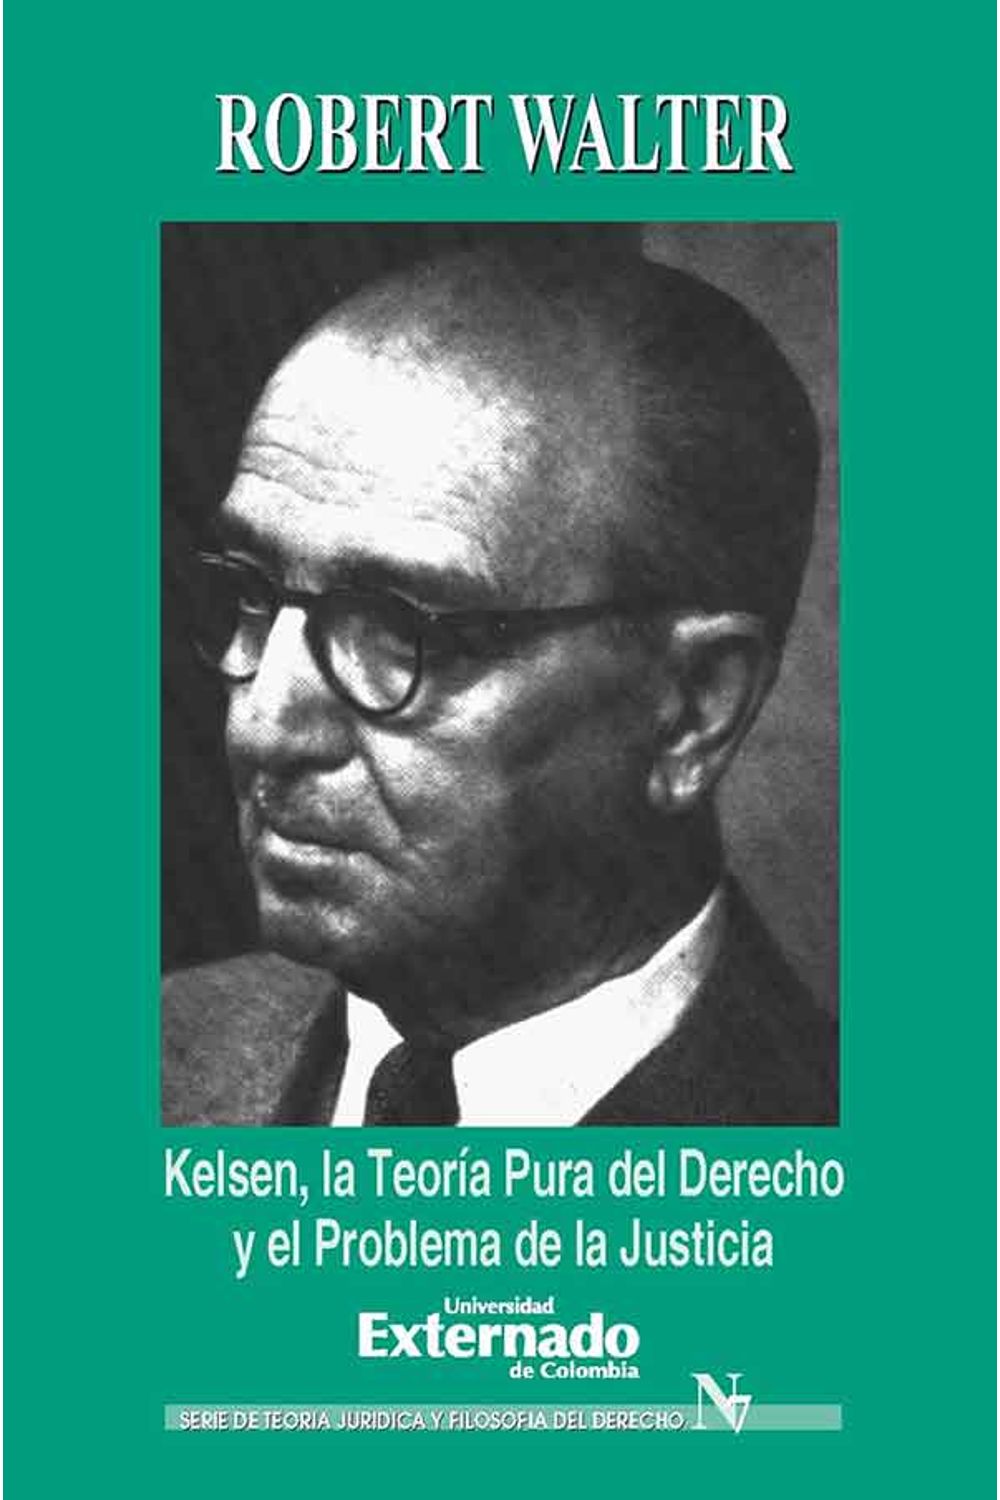 bw-kelsen-la-teoriacutea-pura-del-derecho-y-el-problema-de-la-justicia-u-externado-de-colombia-9789587109764